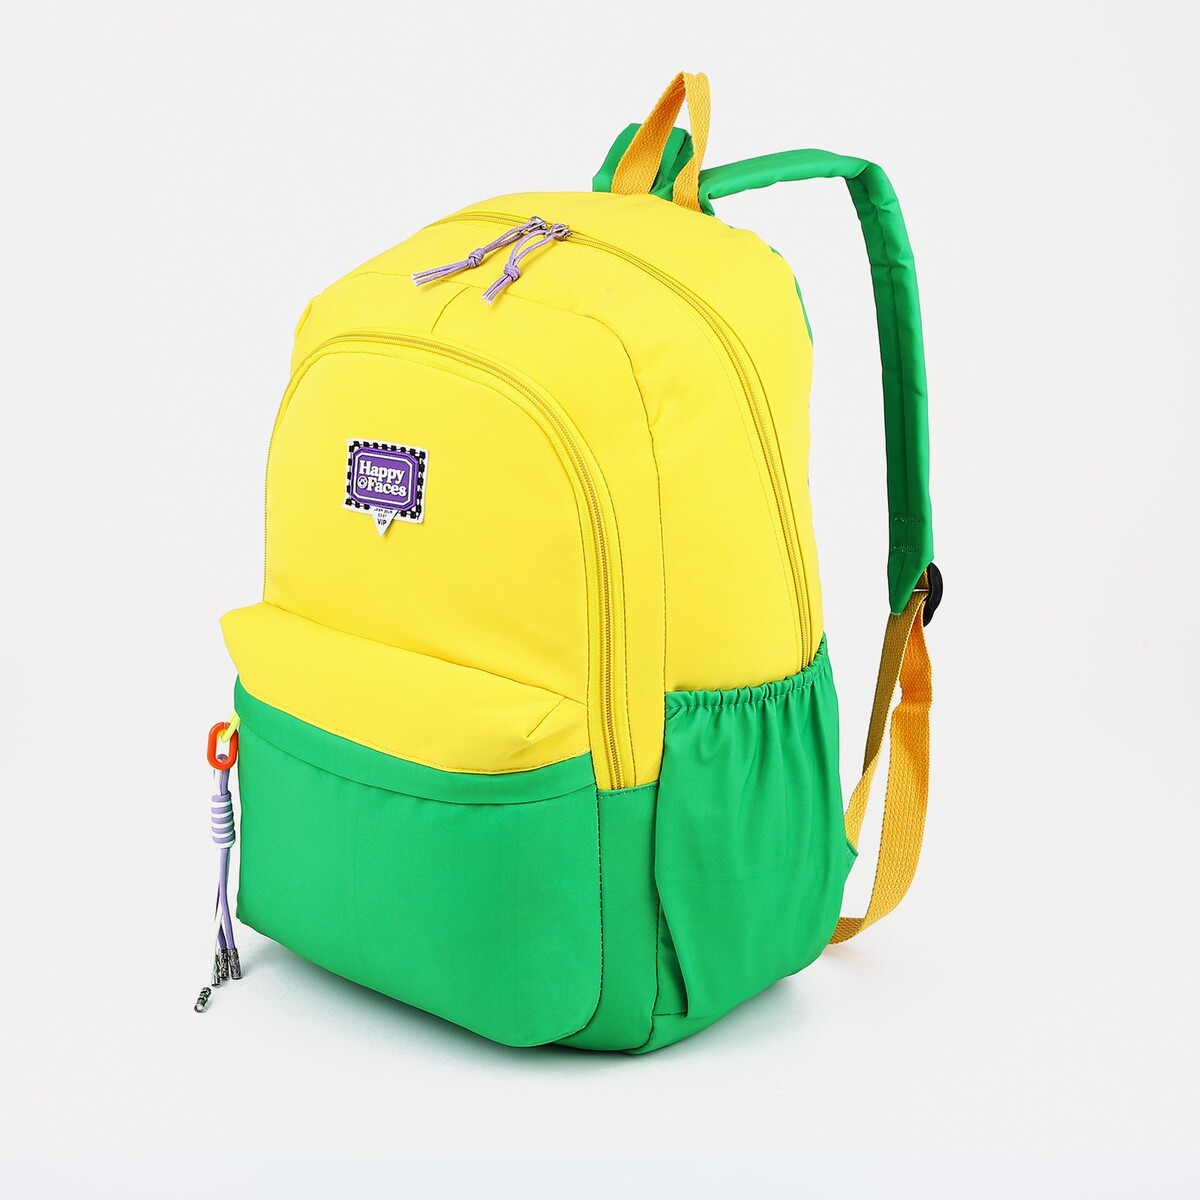 Рюкзак 2 отдела на молнии, 4 наружных кармана, цвет желтый/зеленый рюкзак школьный из текстиля на молнии 3 кармана пенал зеленый